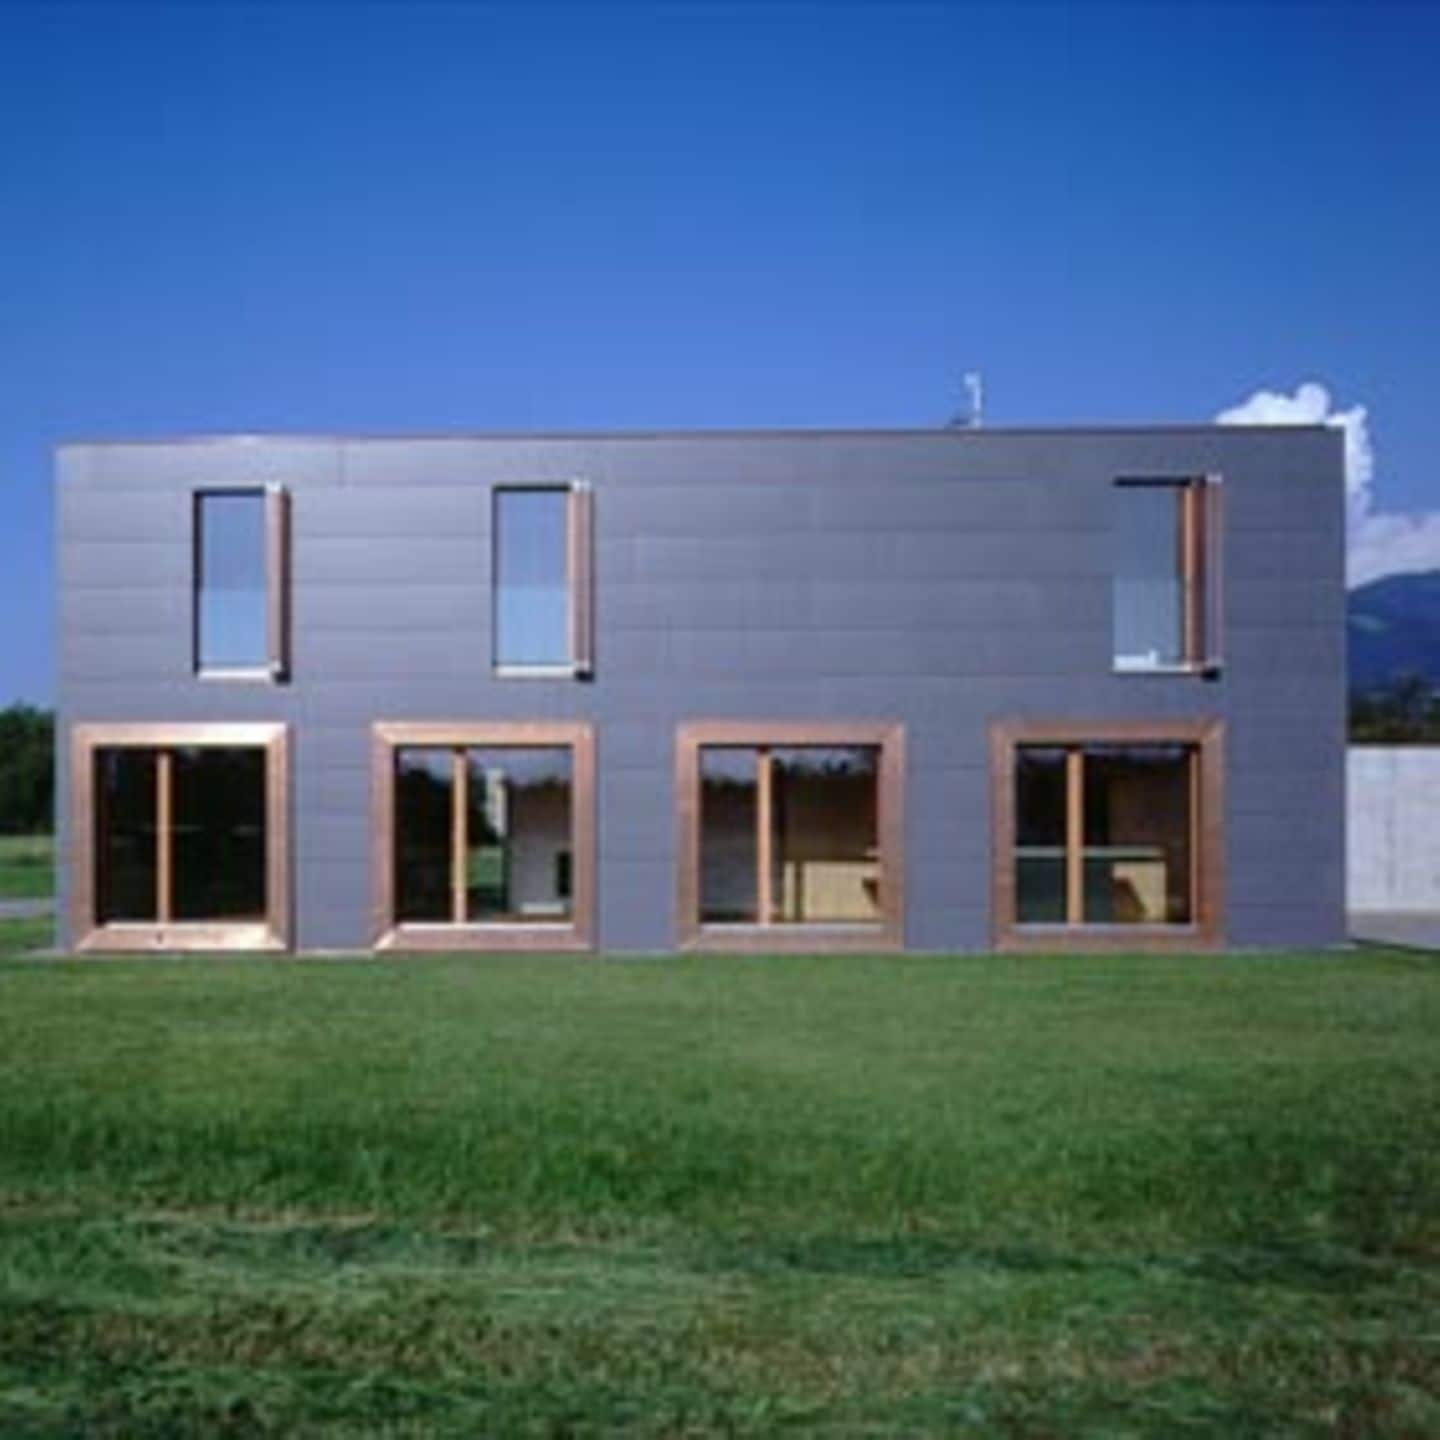 Haus Hartmann im Vorarlberger Städtchen Dornbirn ist mit Eternitverkleidung und den kupfernen Fensterrahmen klar lesbare Architektur.